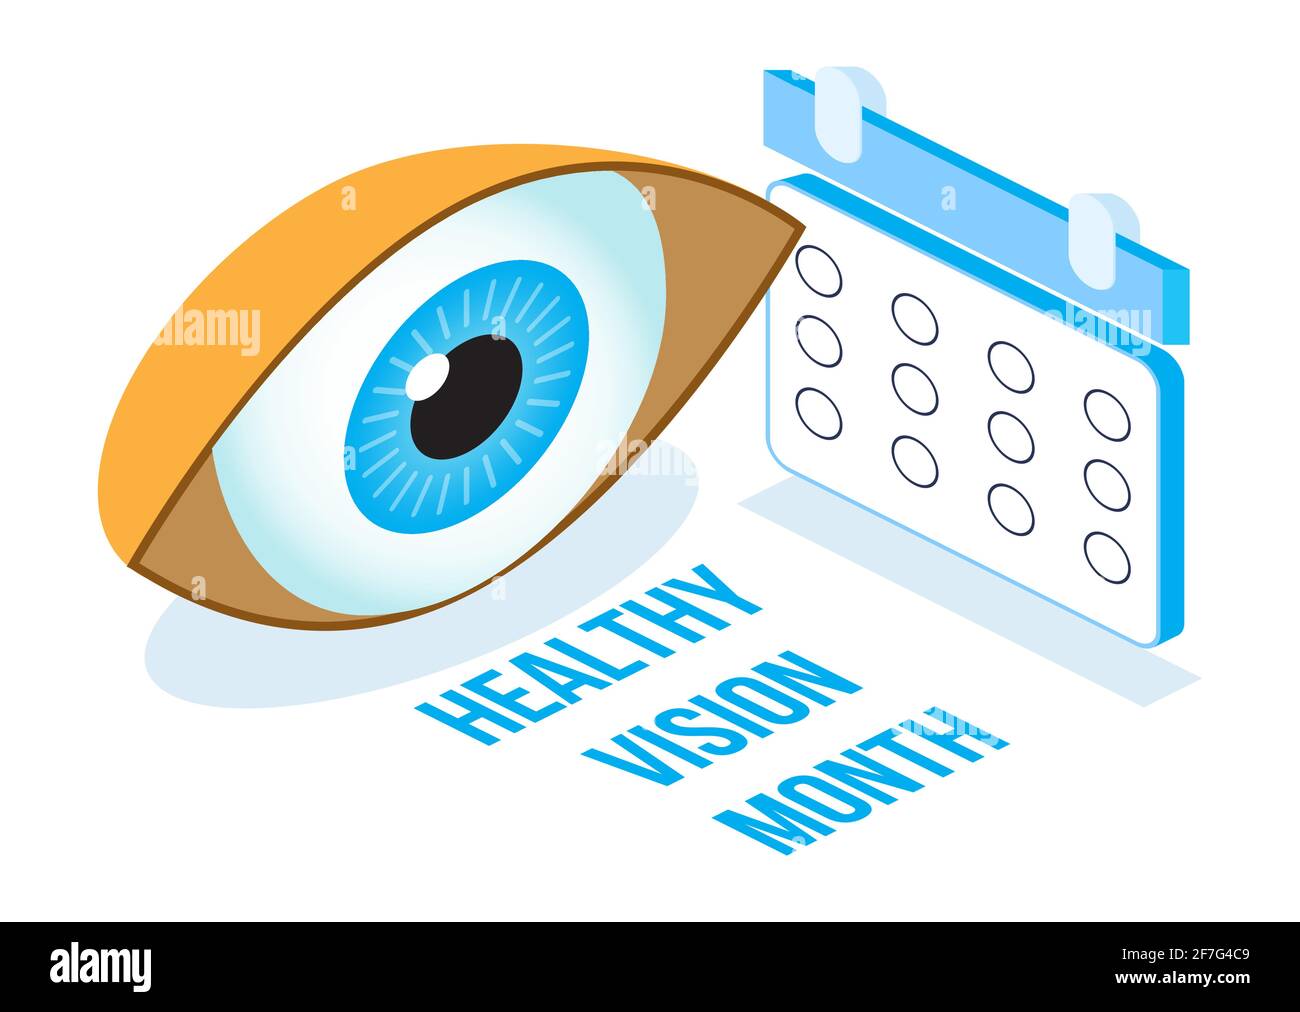 Gesundes Sehen Monat Konzept isometrischer Vektor. Augenarzt Augenuntersuchung Abbildung. Augenillustration für Gesundheitswesen, Webbanner, po Stock Vektor